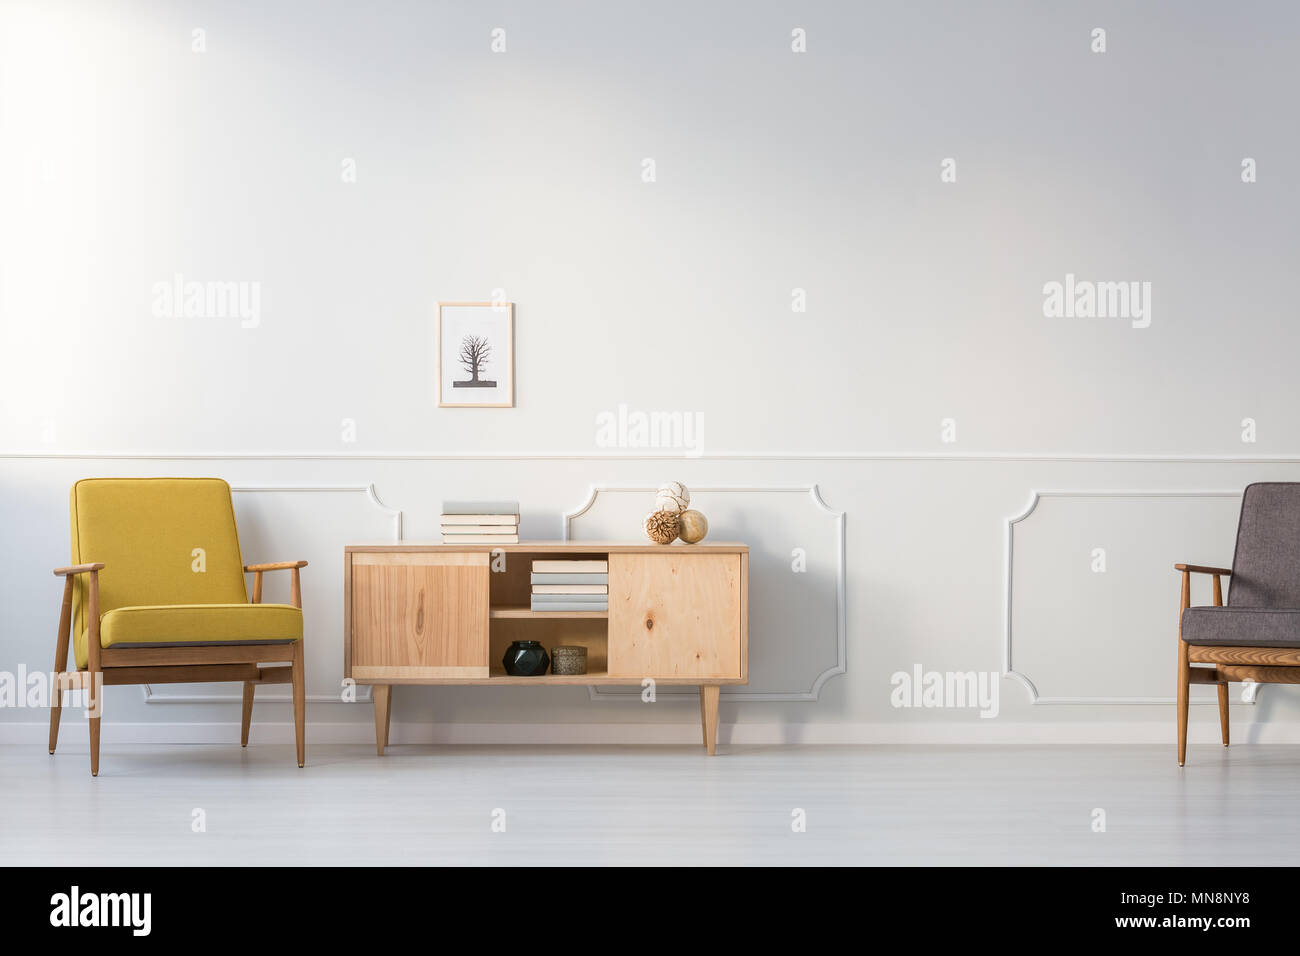 Gelb Vintage Sessel neben Holzschrank gegen weiße Wand im Wohnzimmer Innenraum Stockfoto